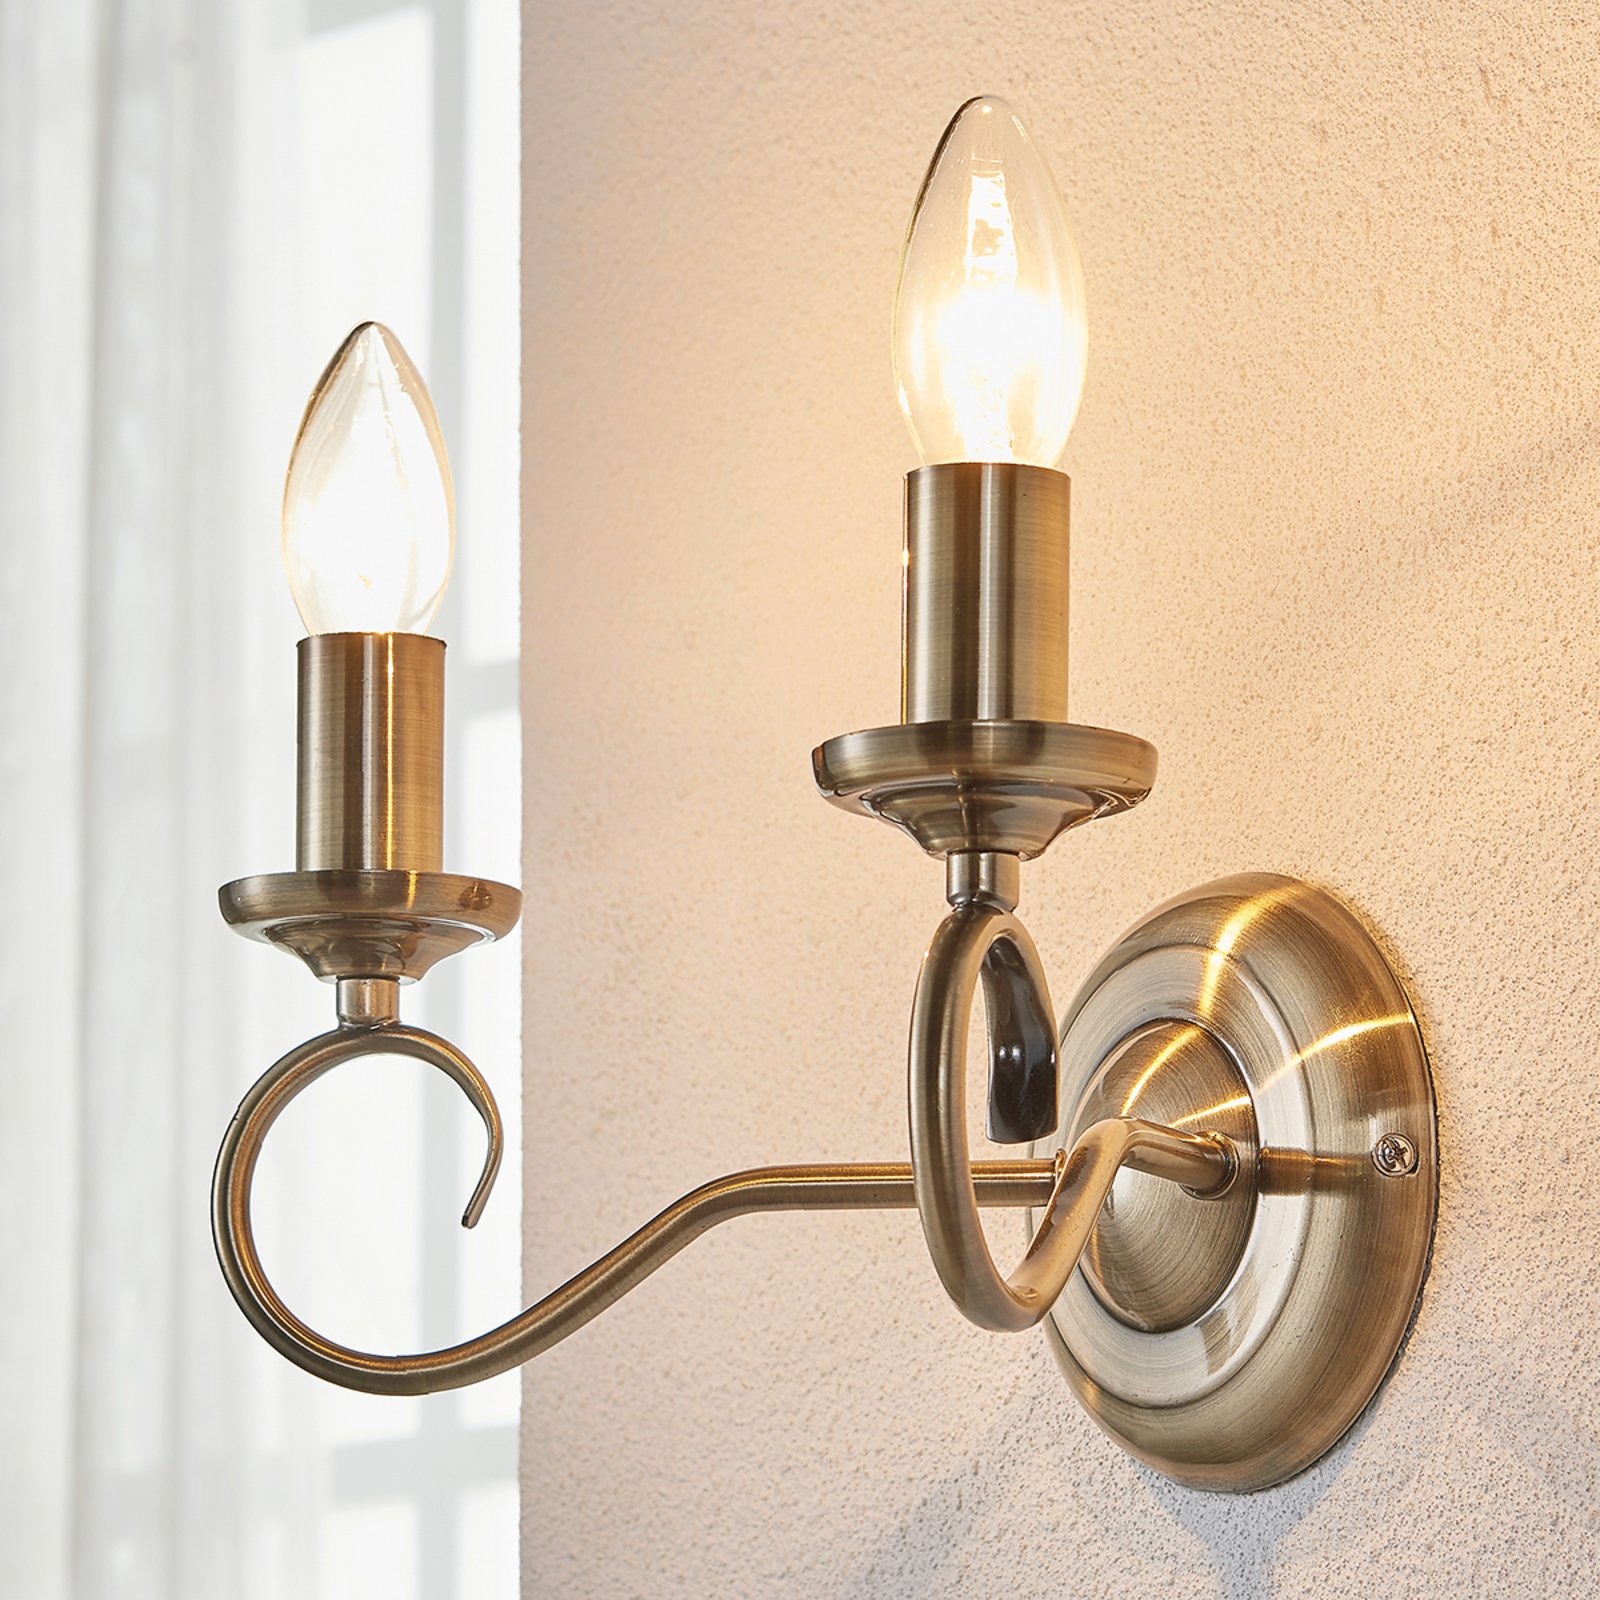 Marnia - elegante lampada da parete ottone antico